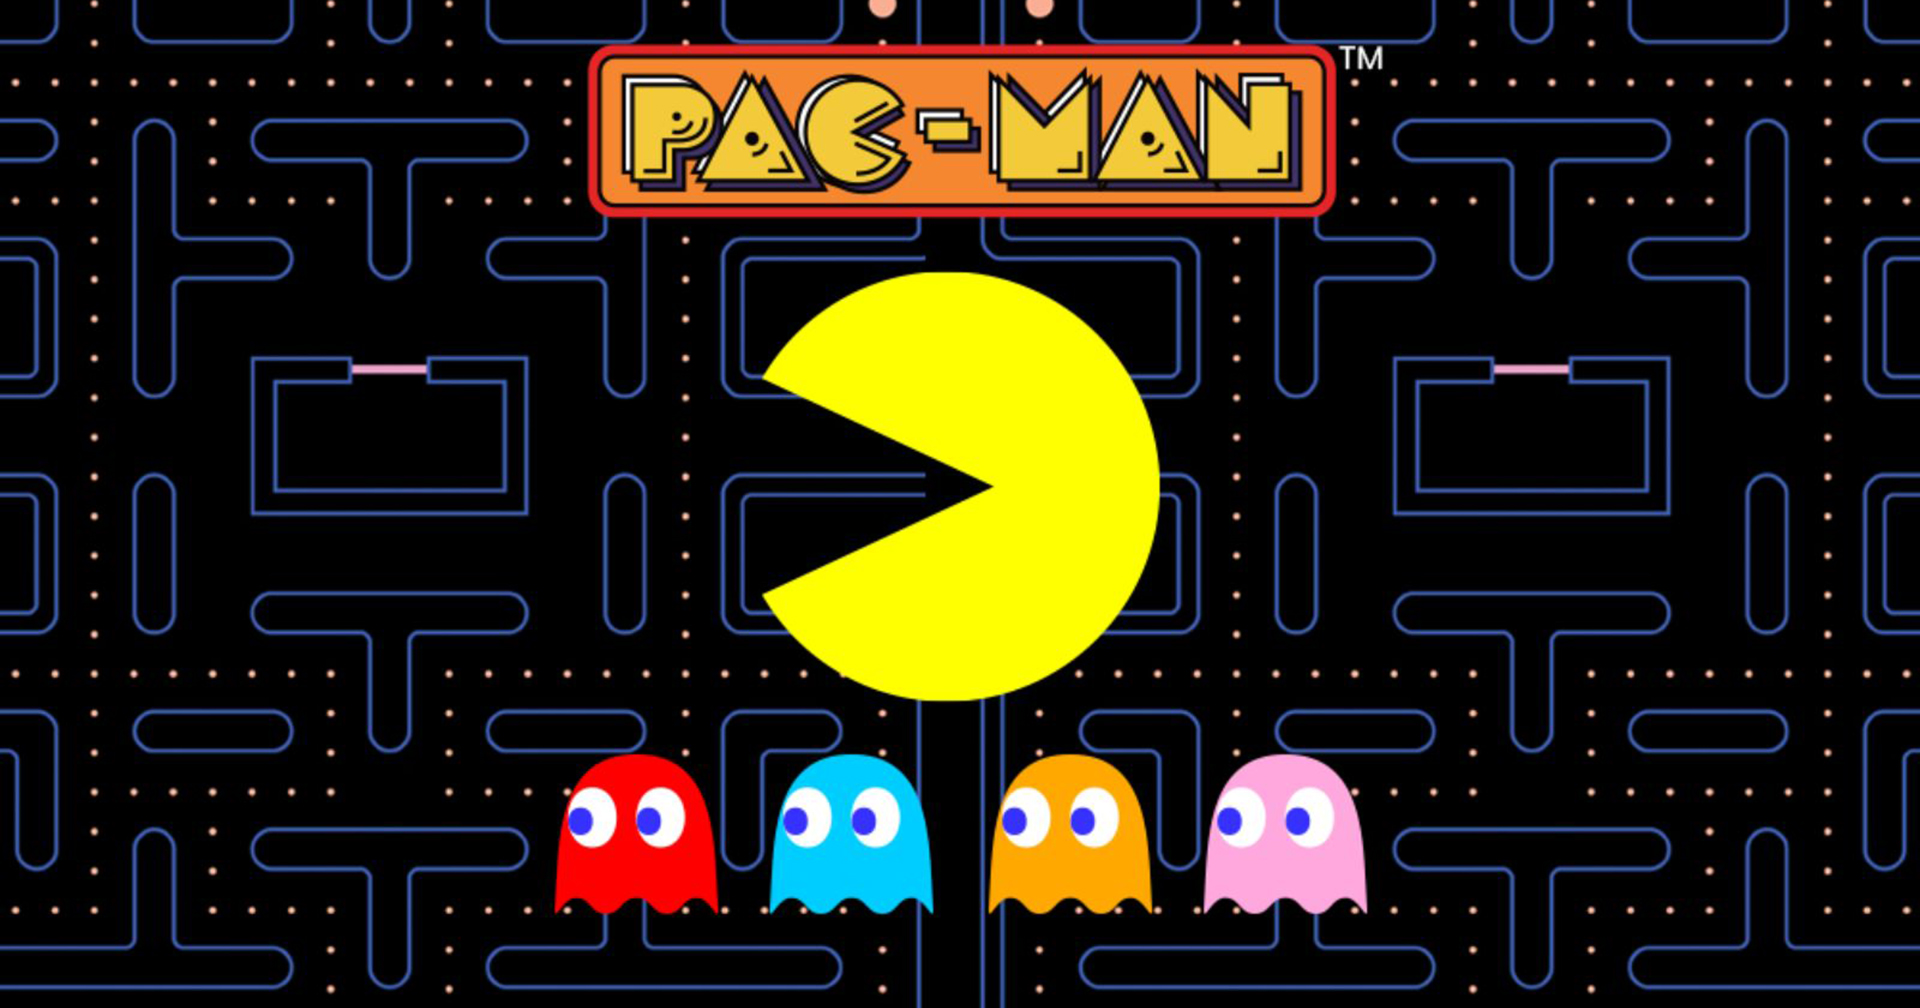 Bandai Namco กำลังสร้าง ‘Pac-Man’ เวอร์ชันภาพยนตร์